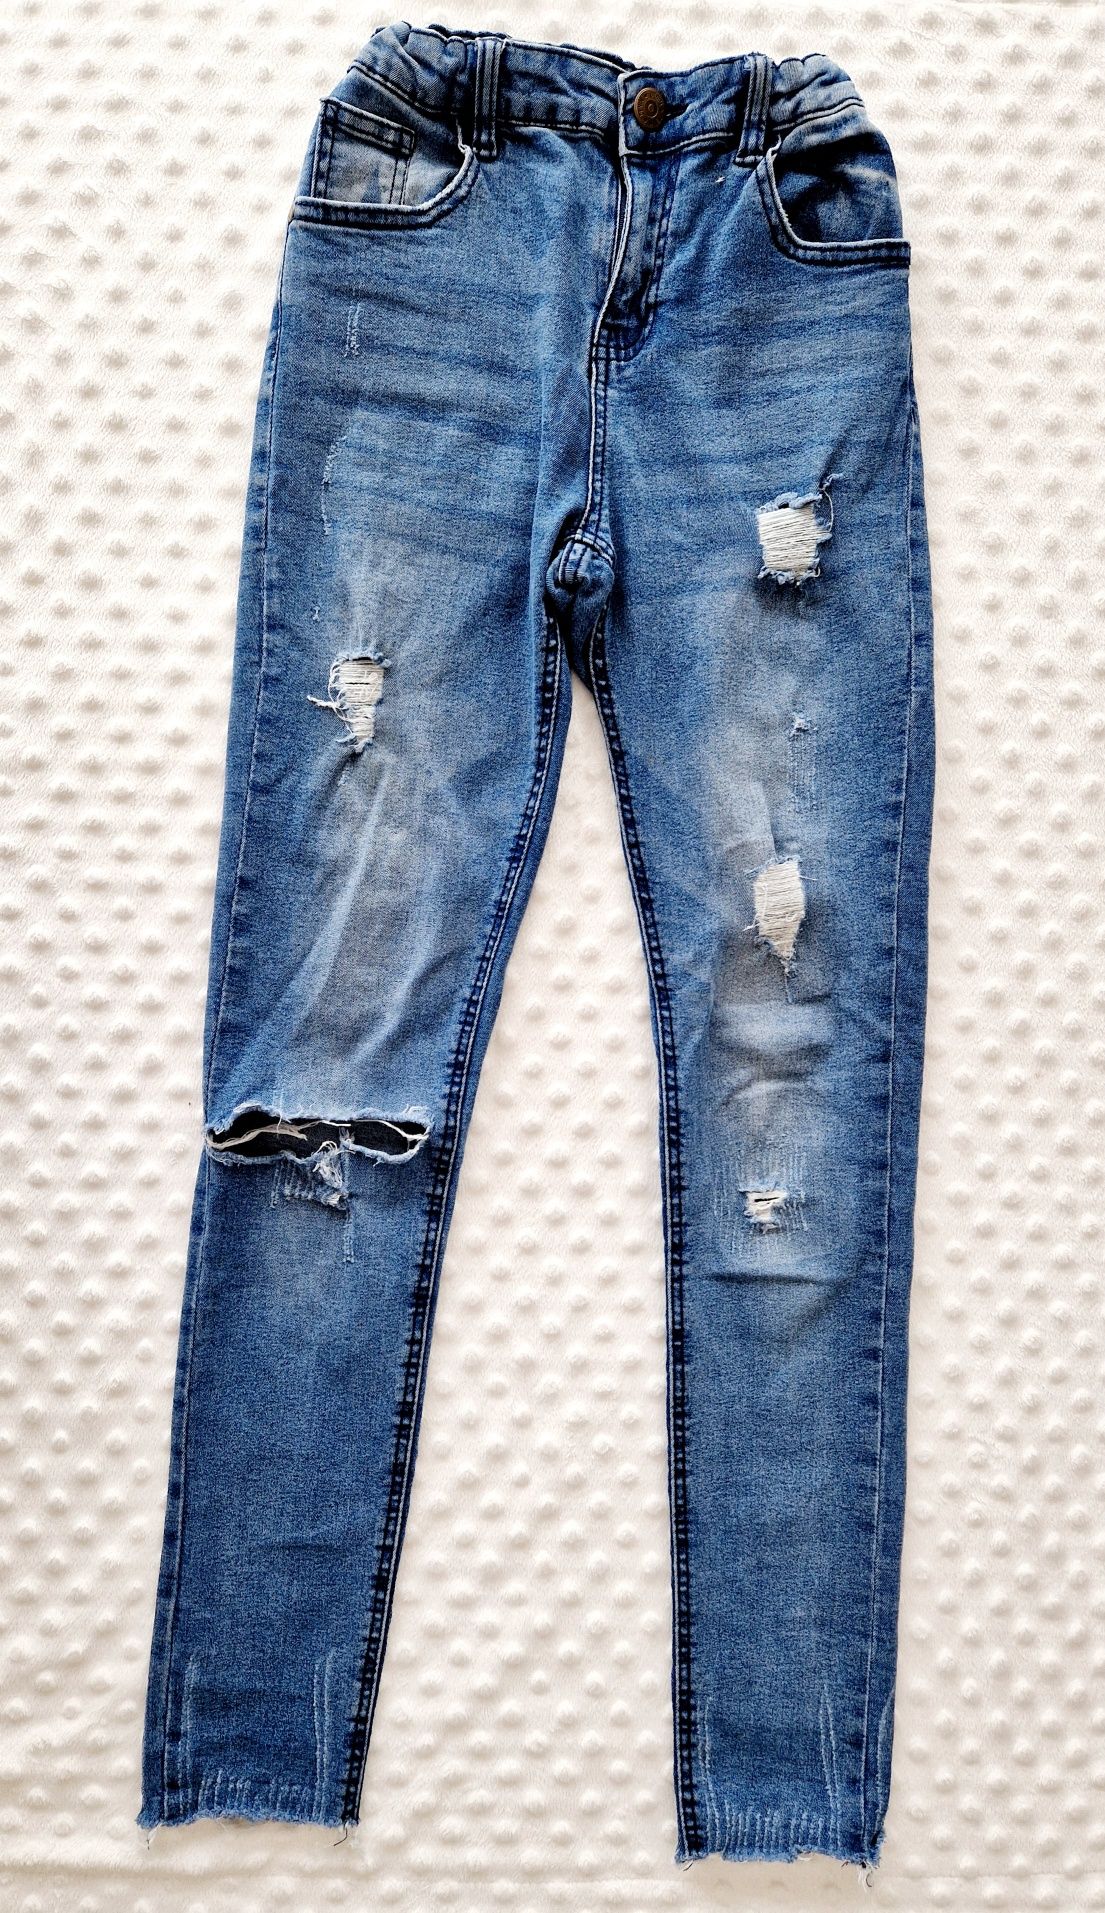 Spodnie dżinsowe rozm. 164 cm